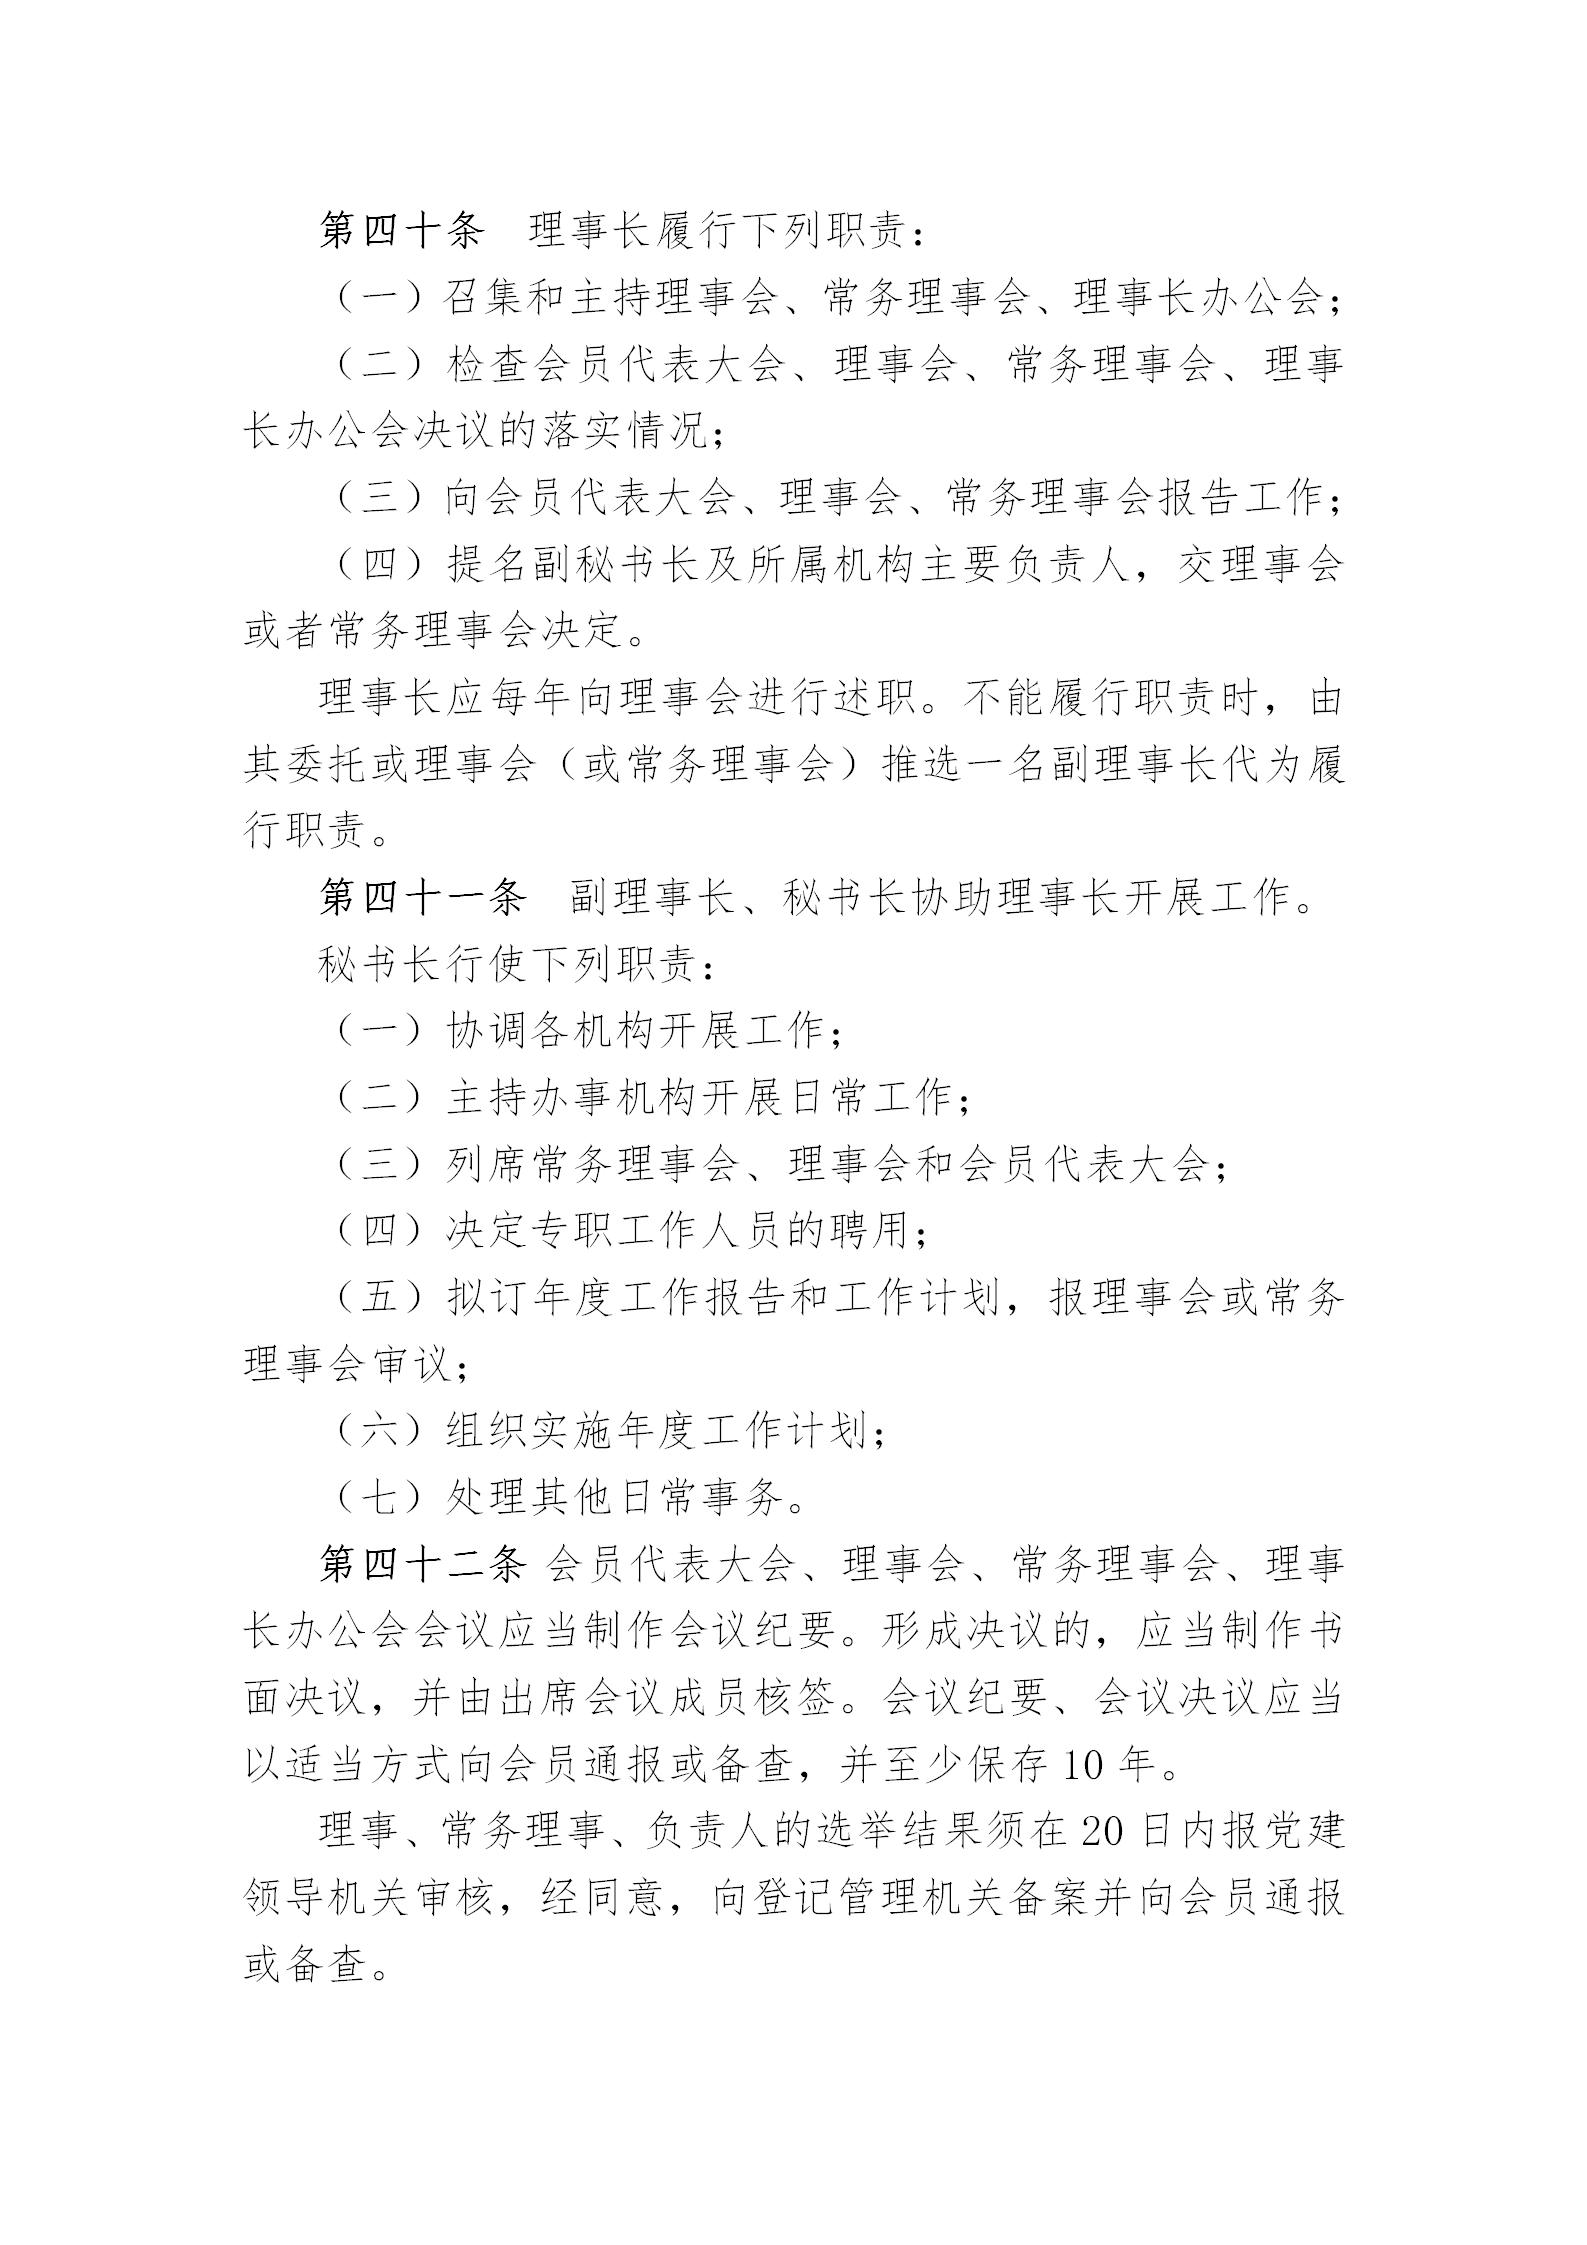 中国演艺设备技术协会章程(定稿)_12.jpg